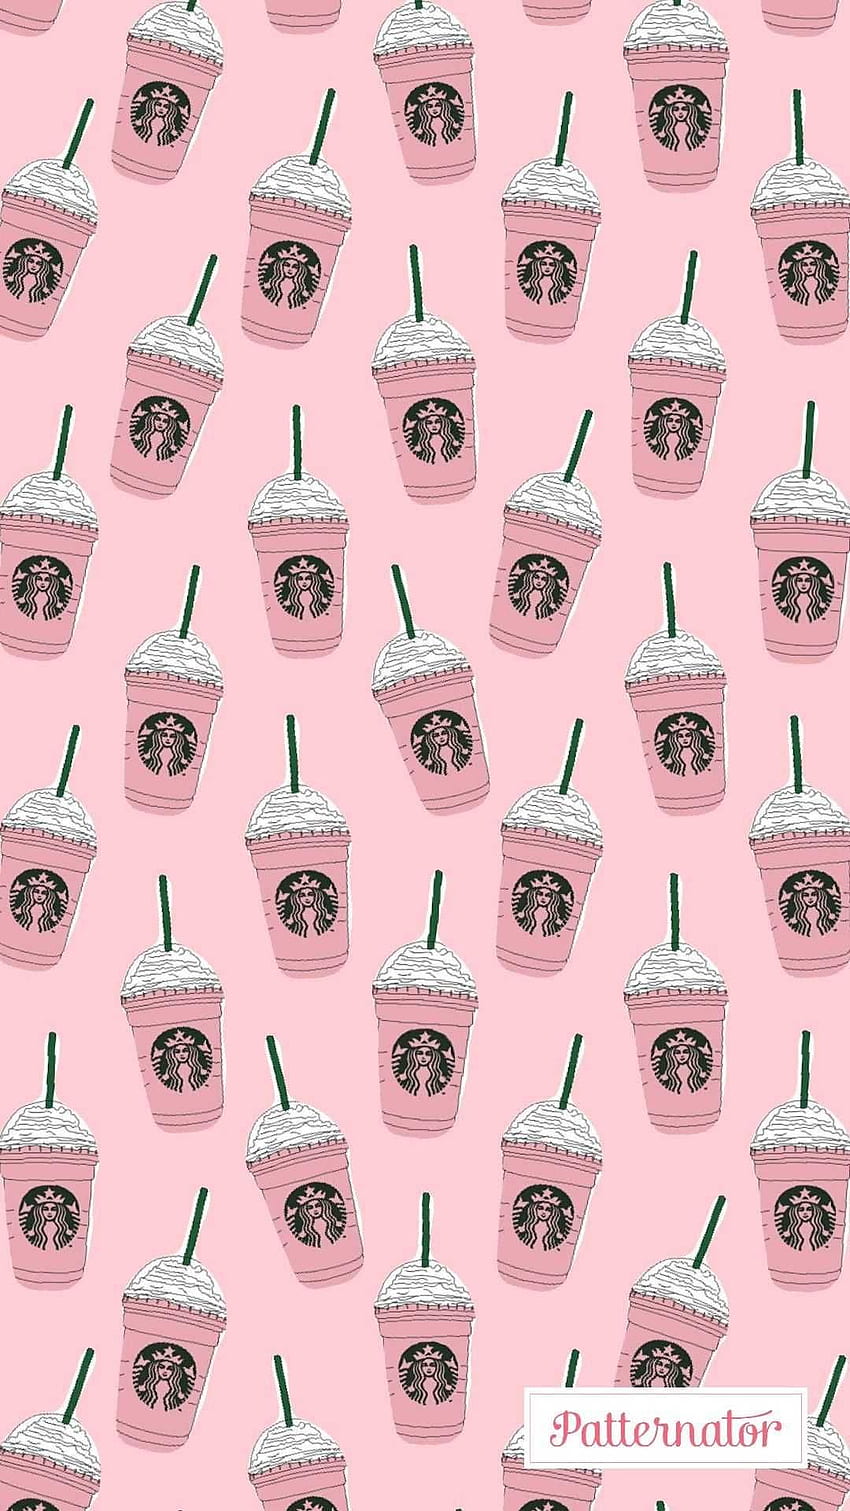 Starbucks màu vàng hồng nhỏ xinh này sẽ khiến bạn liên tưởng đến cà phê ngon và sự thoải mái. Hãy xem hình ảnh này để khám phá thêm về chiếc cốc Starbucks màu hồng vàng này đang chờ đón bạn.